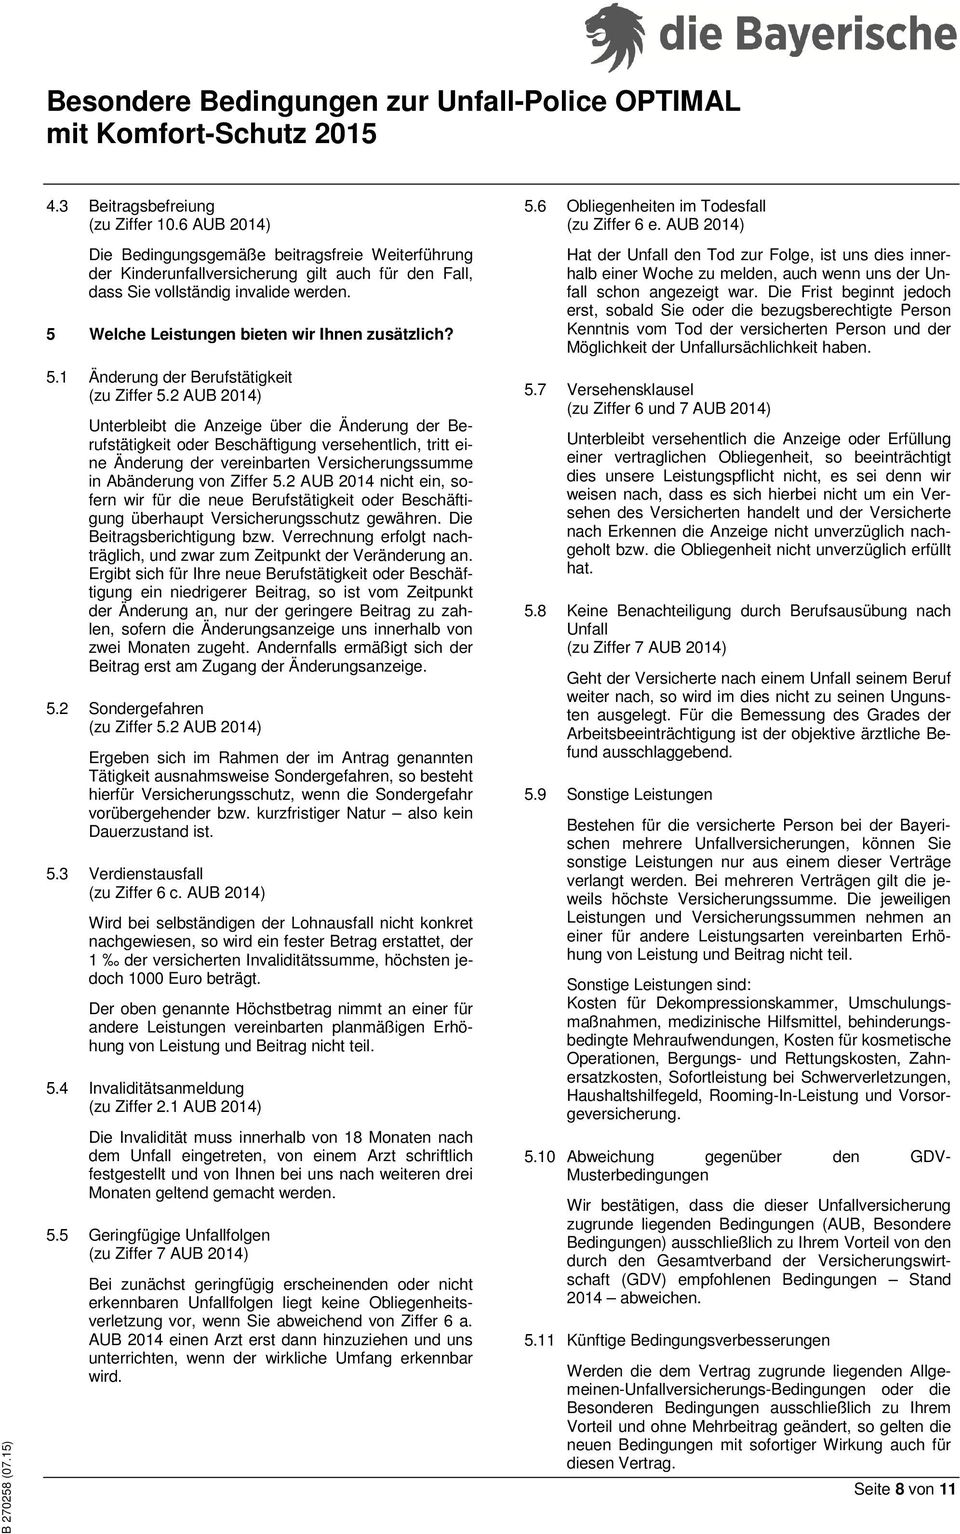 2 AUB 2014) Unterbleibt die Anzeige über die Änderung der Berufstätigkeit oder Beschäftigung versehentlich, tritt eine Änderung der vereinbarten Versicherungssumme in Abänderung von Ziffer 5.